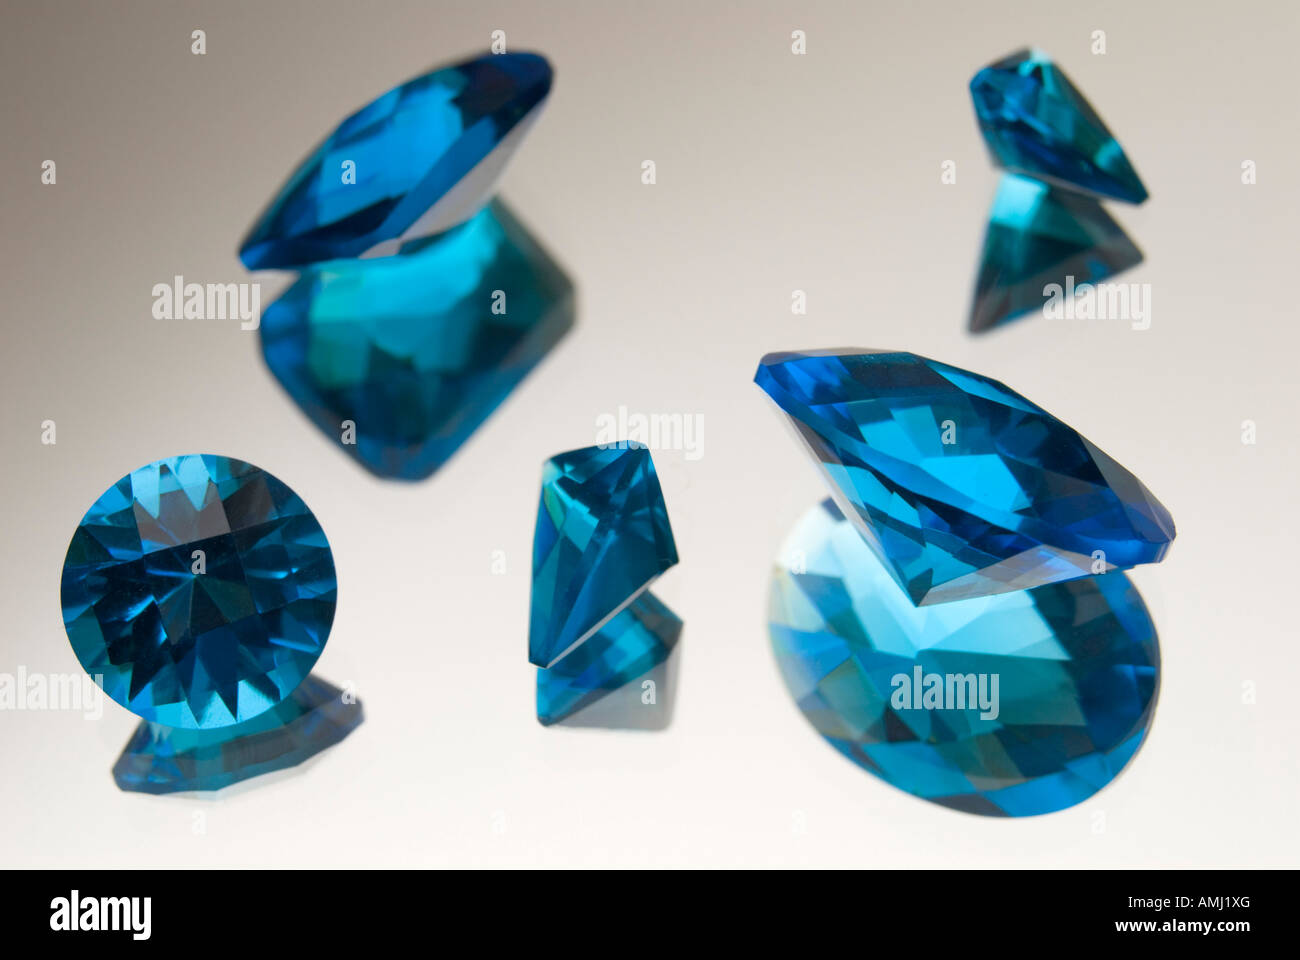 Cut Aquamarine gemstones Stock Photo